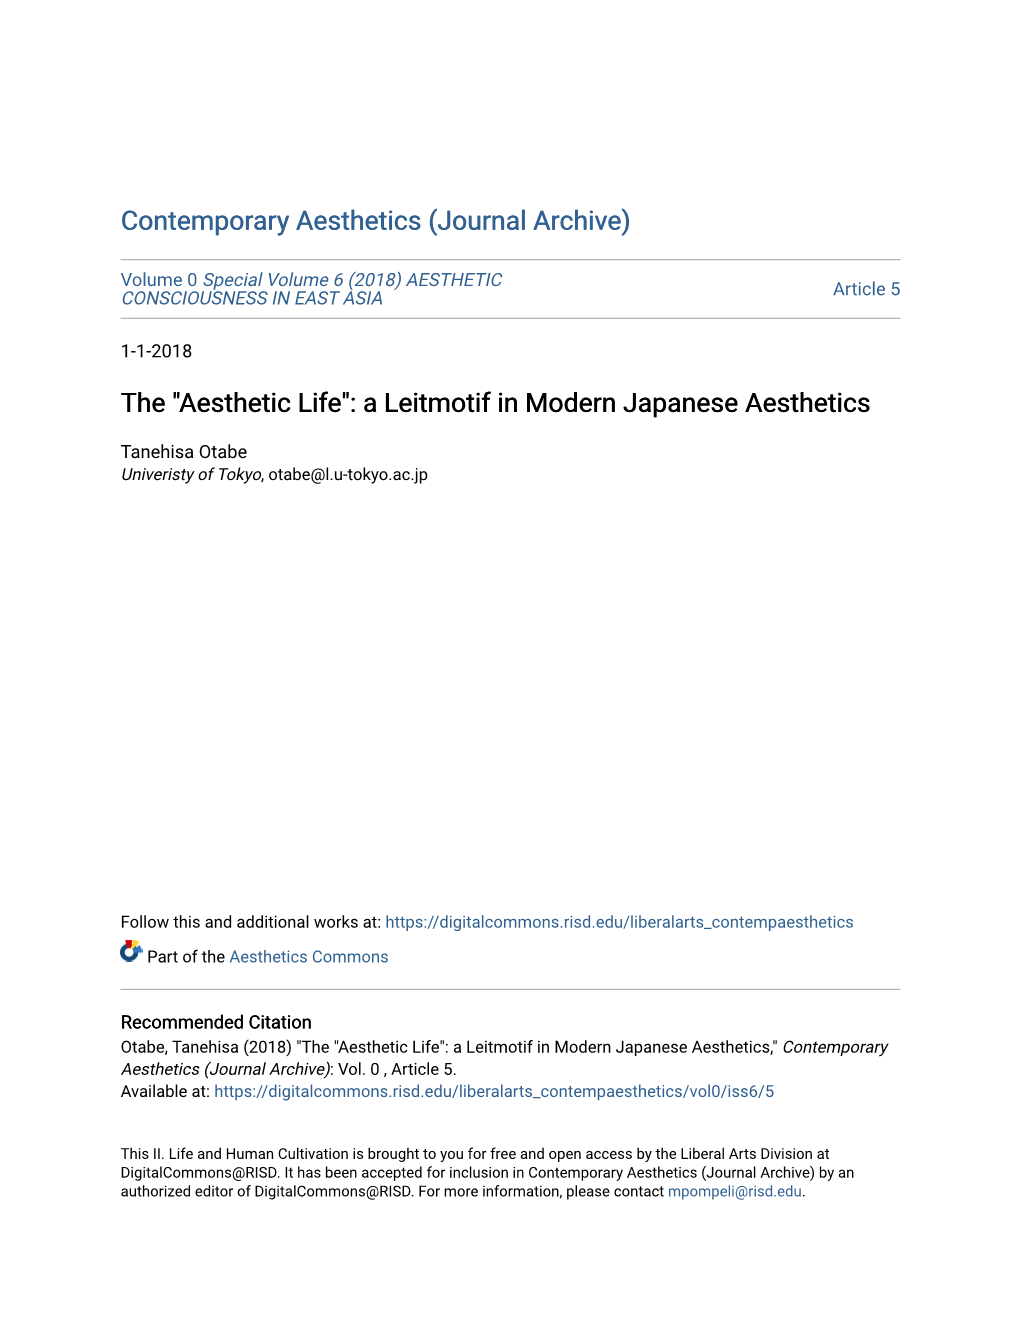 A Leitmotif in Modern Japanese Aesthetics